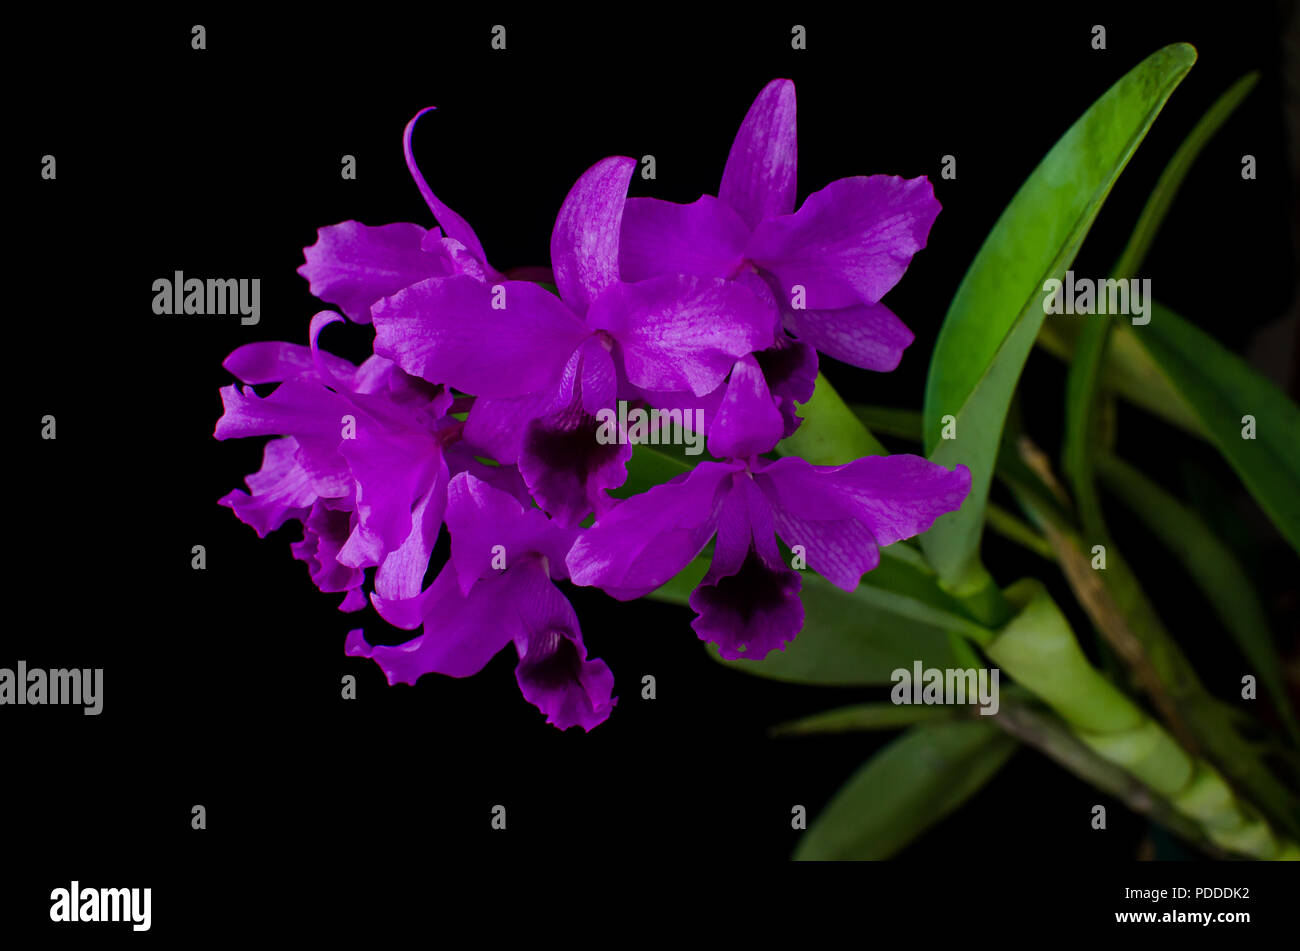 Guarianthe bowringiana on black background Stock Photo